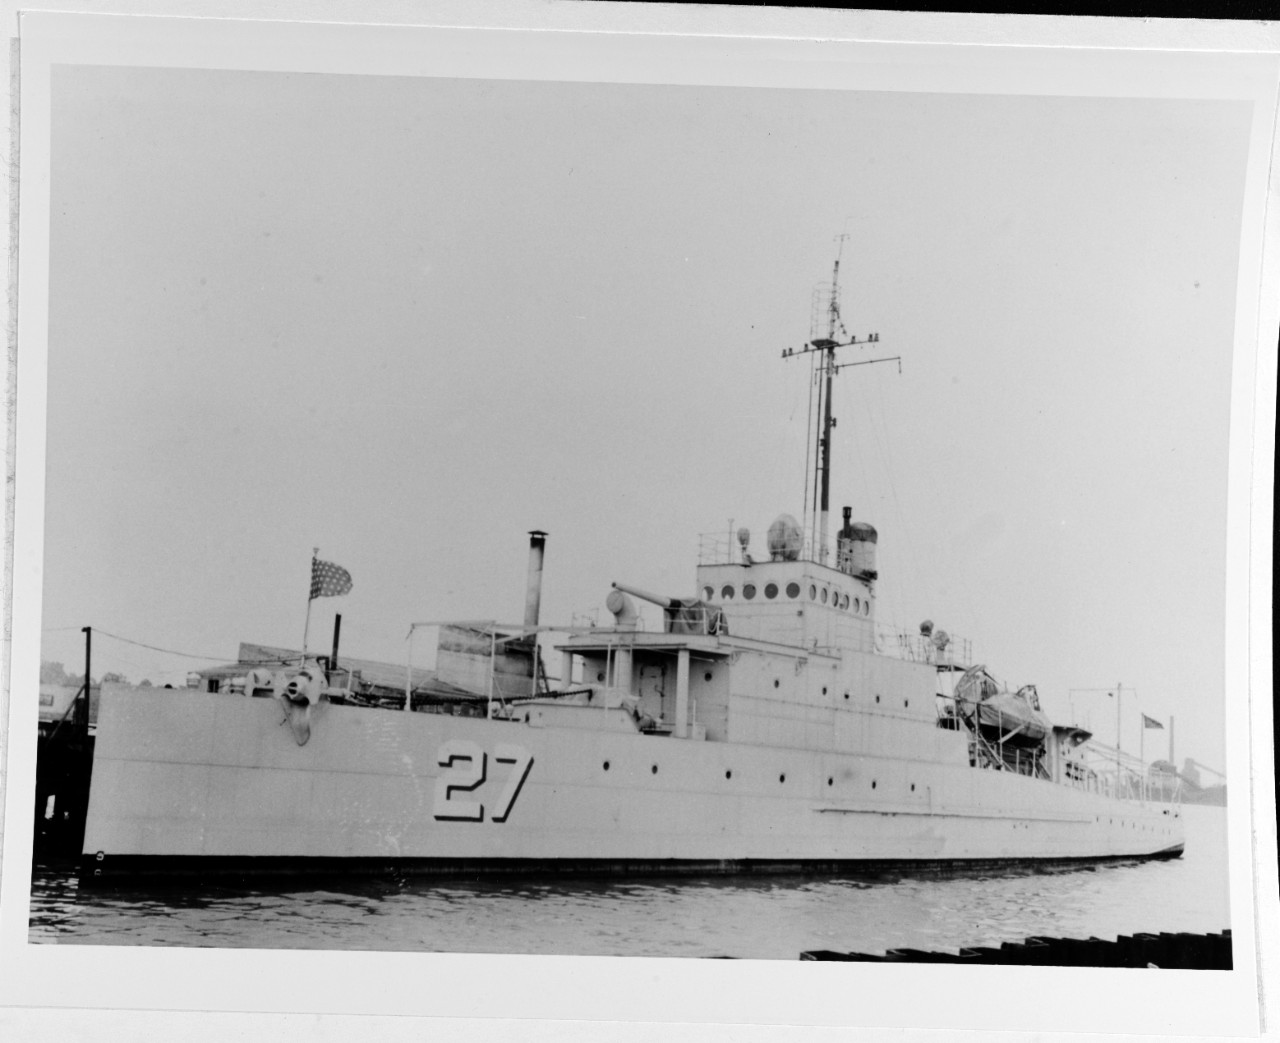 USS EAGLE 27 (PE-27)